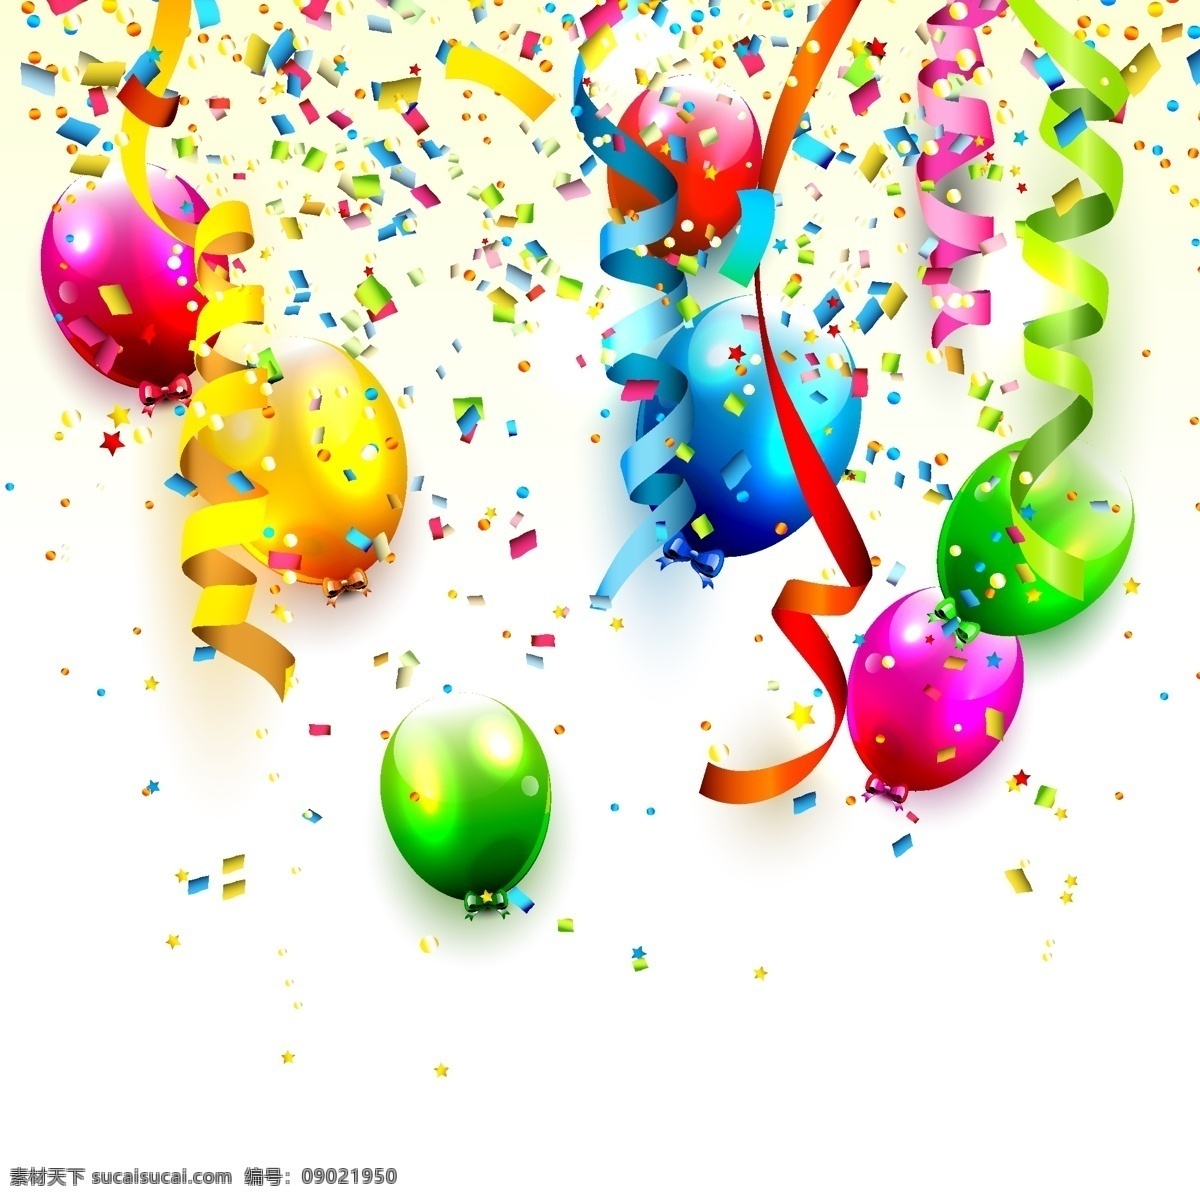 气球 碎纸屑 彩色气球 氛围彩色气球 节日彩色气球 节日氛围 彩色气 彩带 彩纸 生活百科 休闲娱乐 平面素材